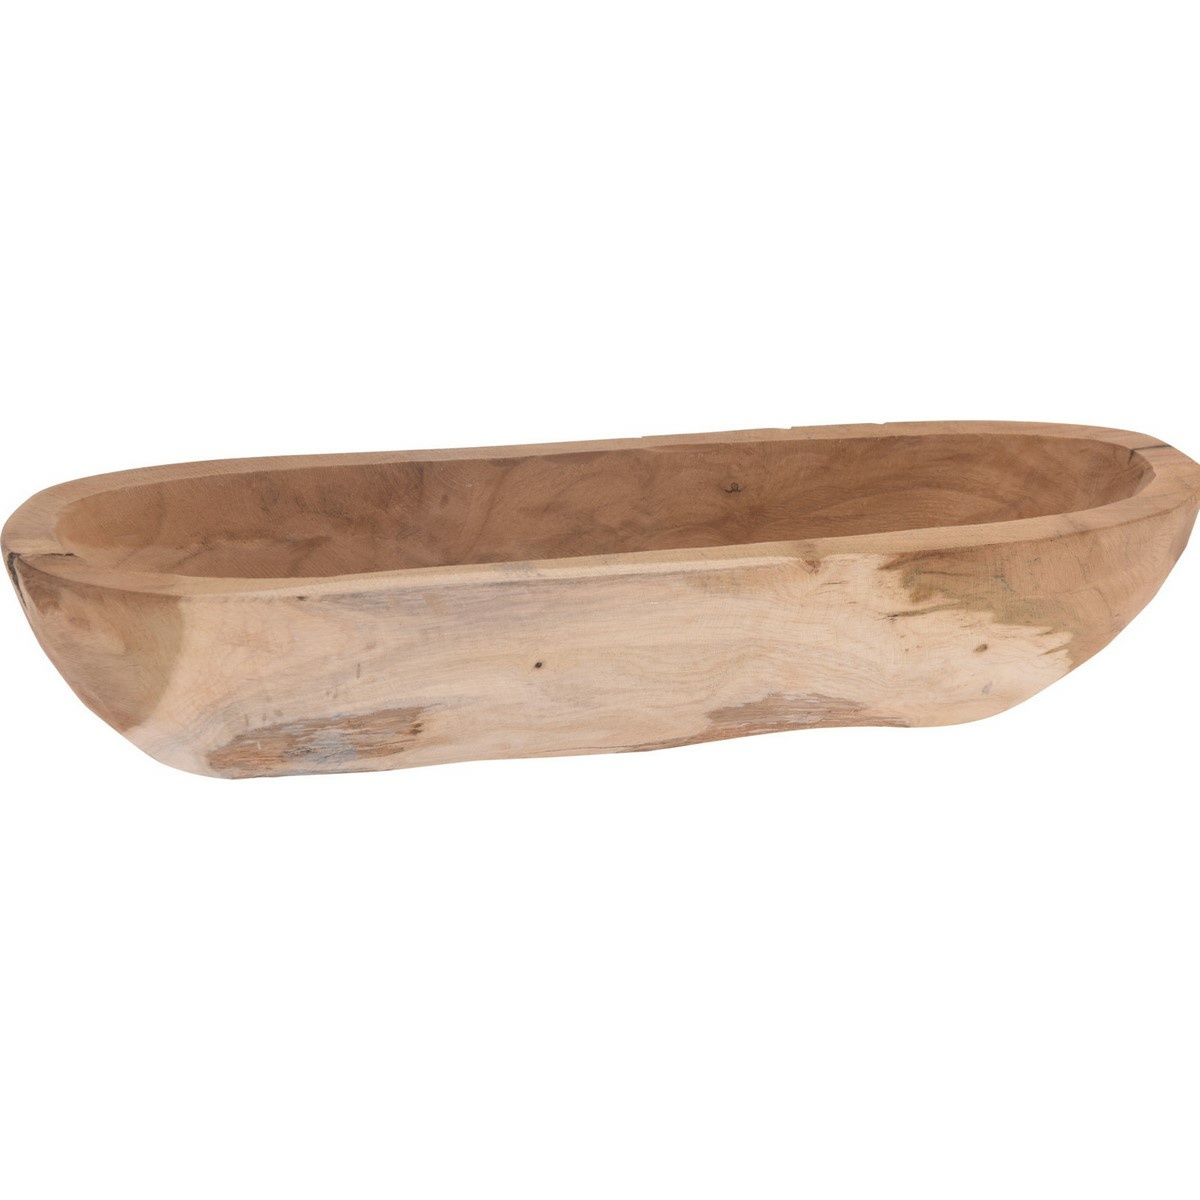 Dekorační miska z teakového dřeva Canoe, 40 x 7 x 11 cm